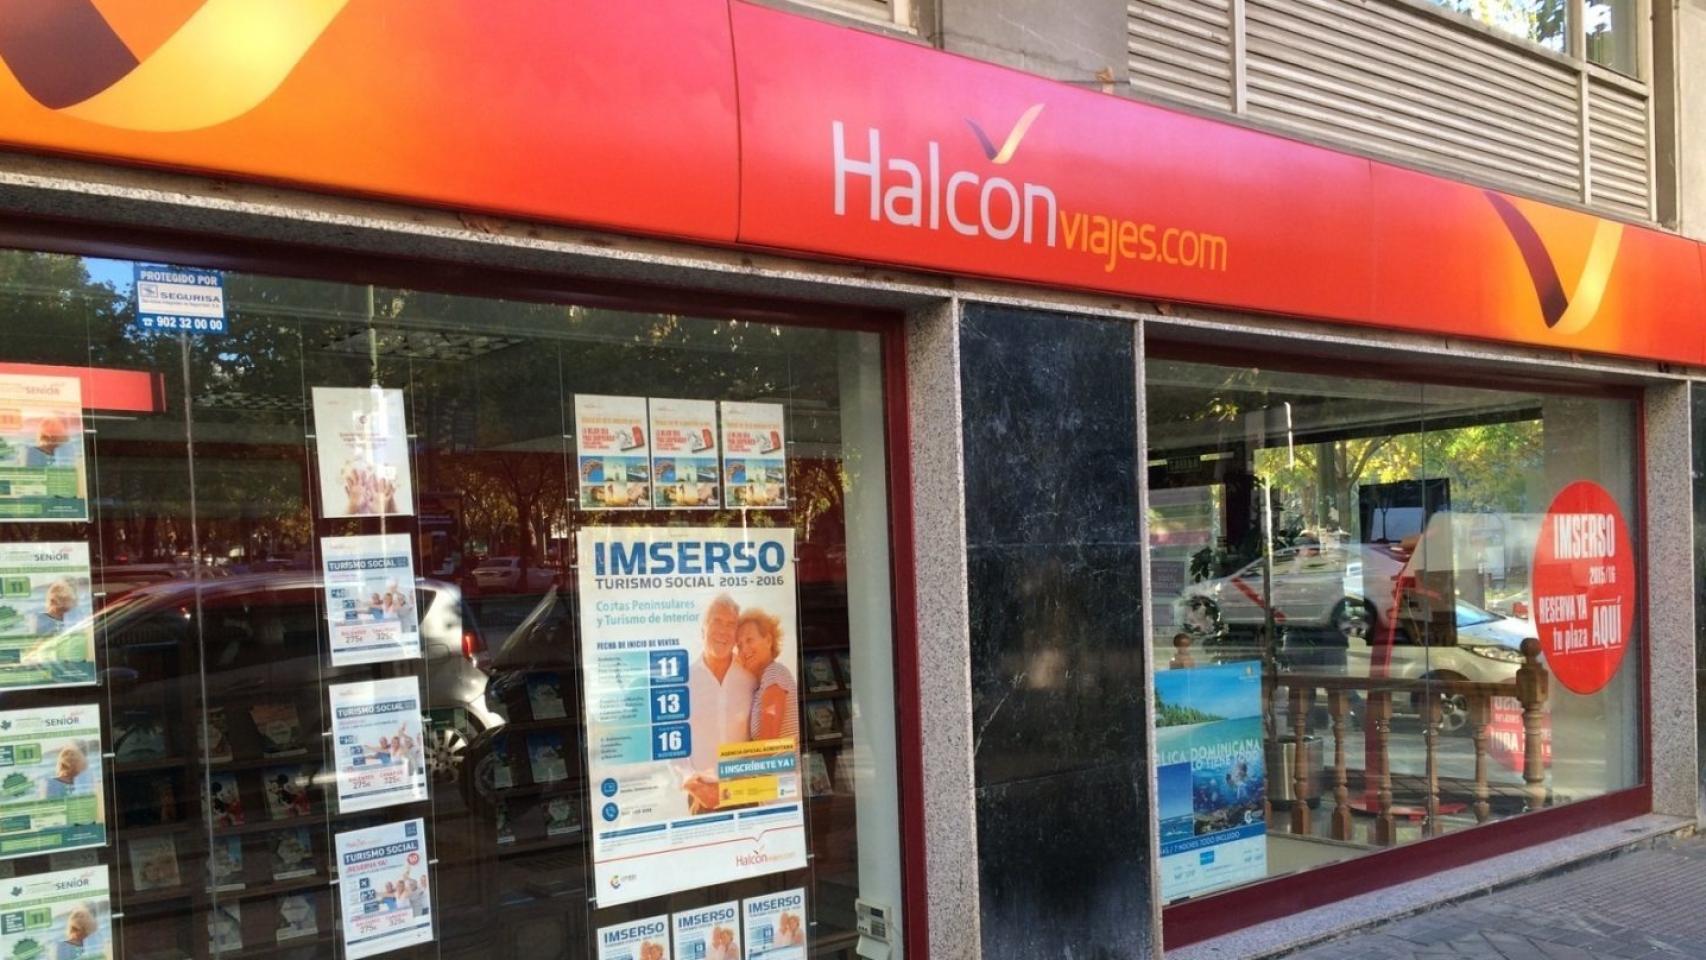 Halcón Viajes Viajes Ecuador regalan a sus clientes repostar estaciones Cepsa